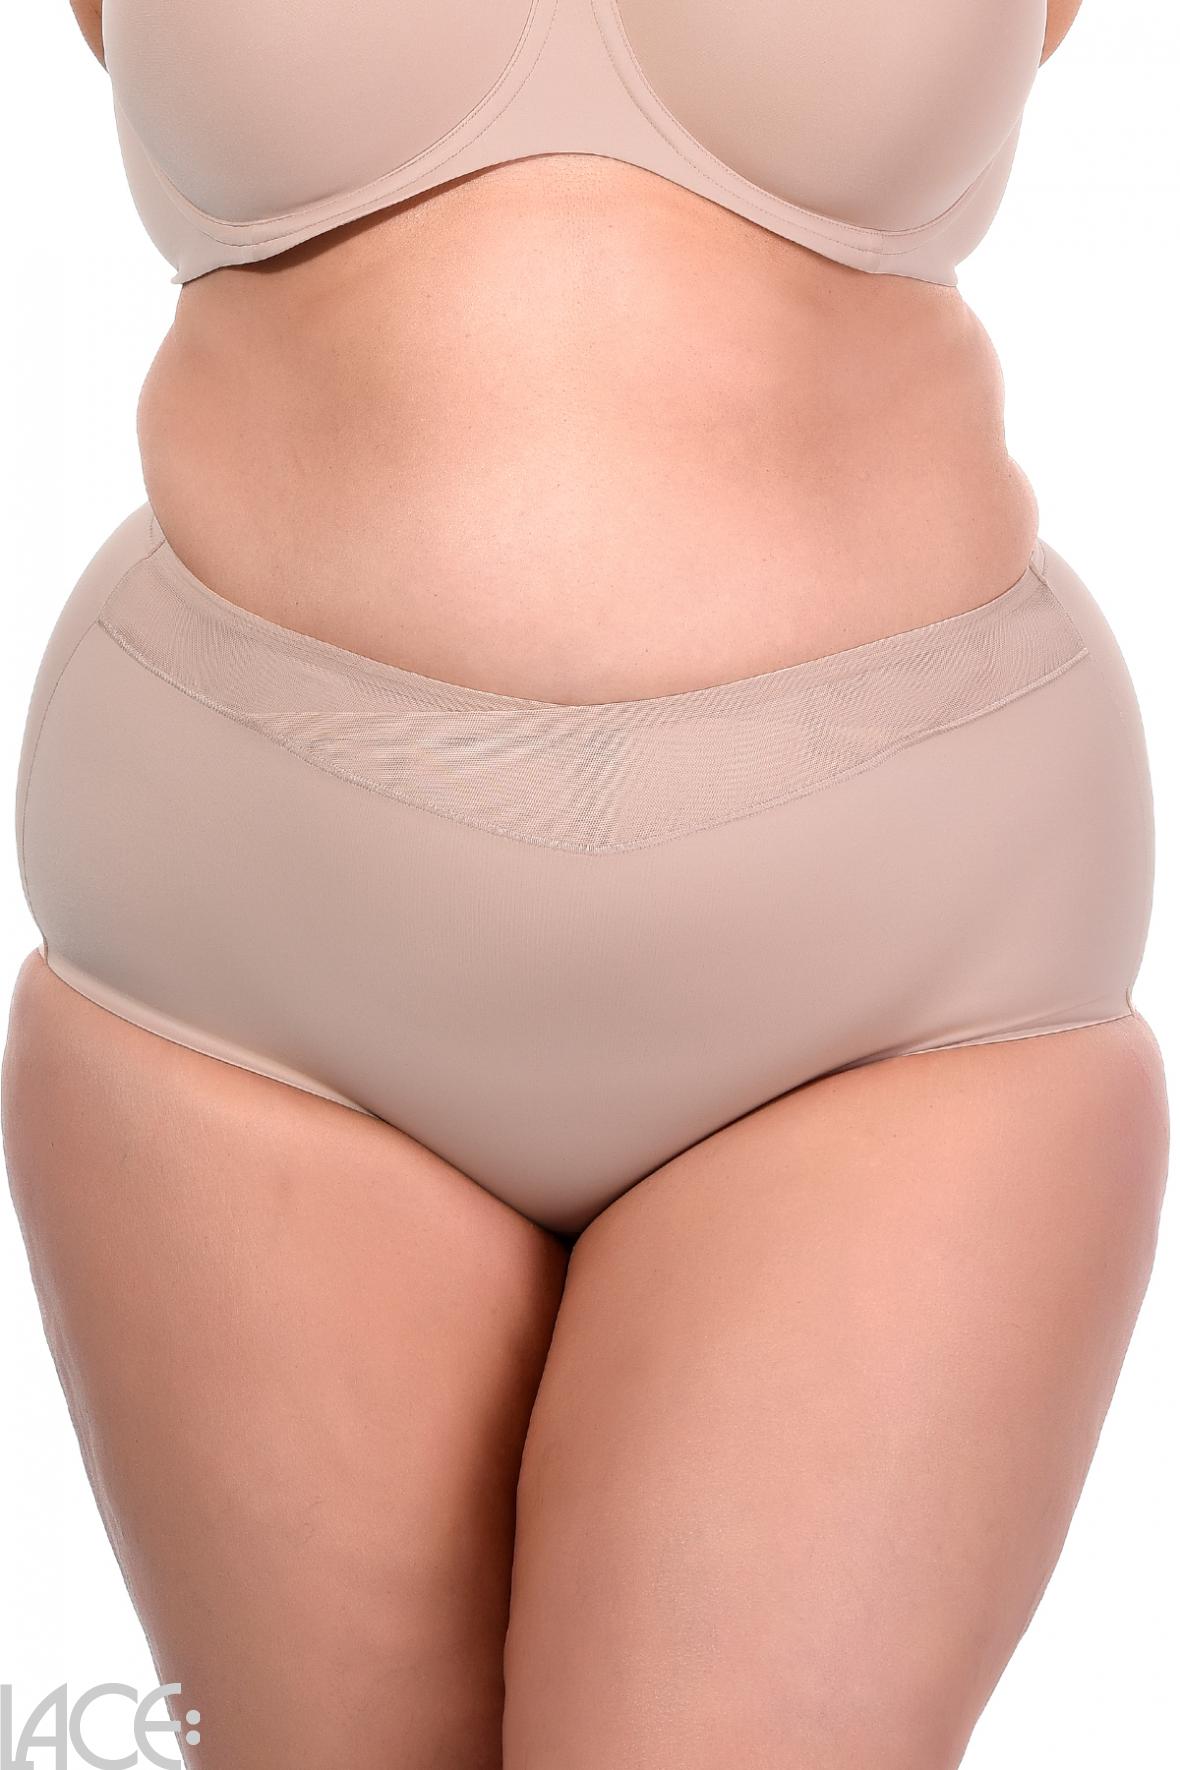 Panty girdles  Triumph Womans Wild Rose Sensation Nude Beige · An Dersoni  Hc